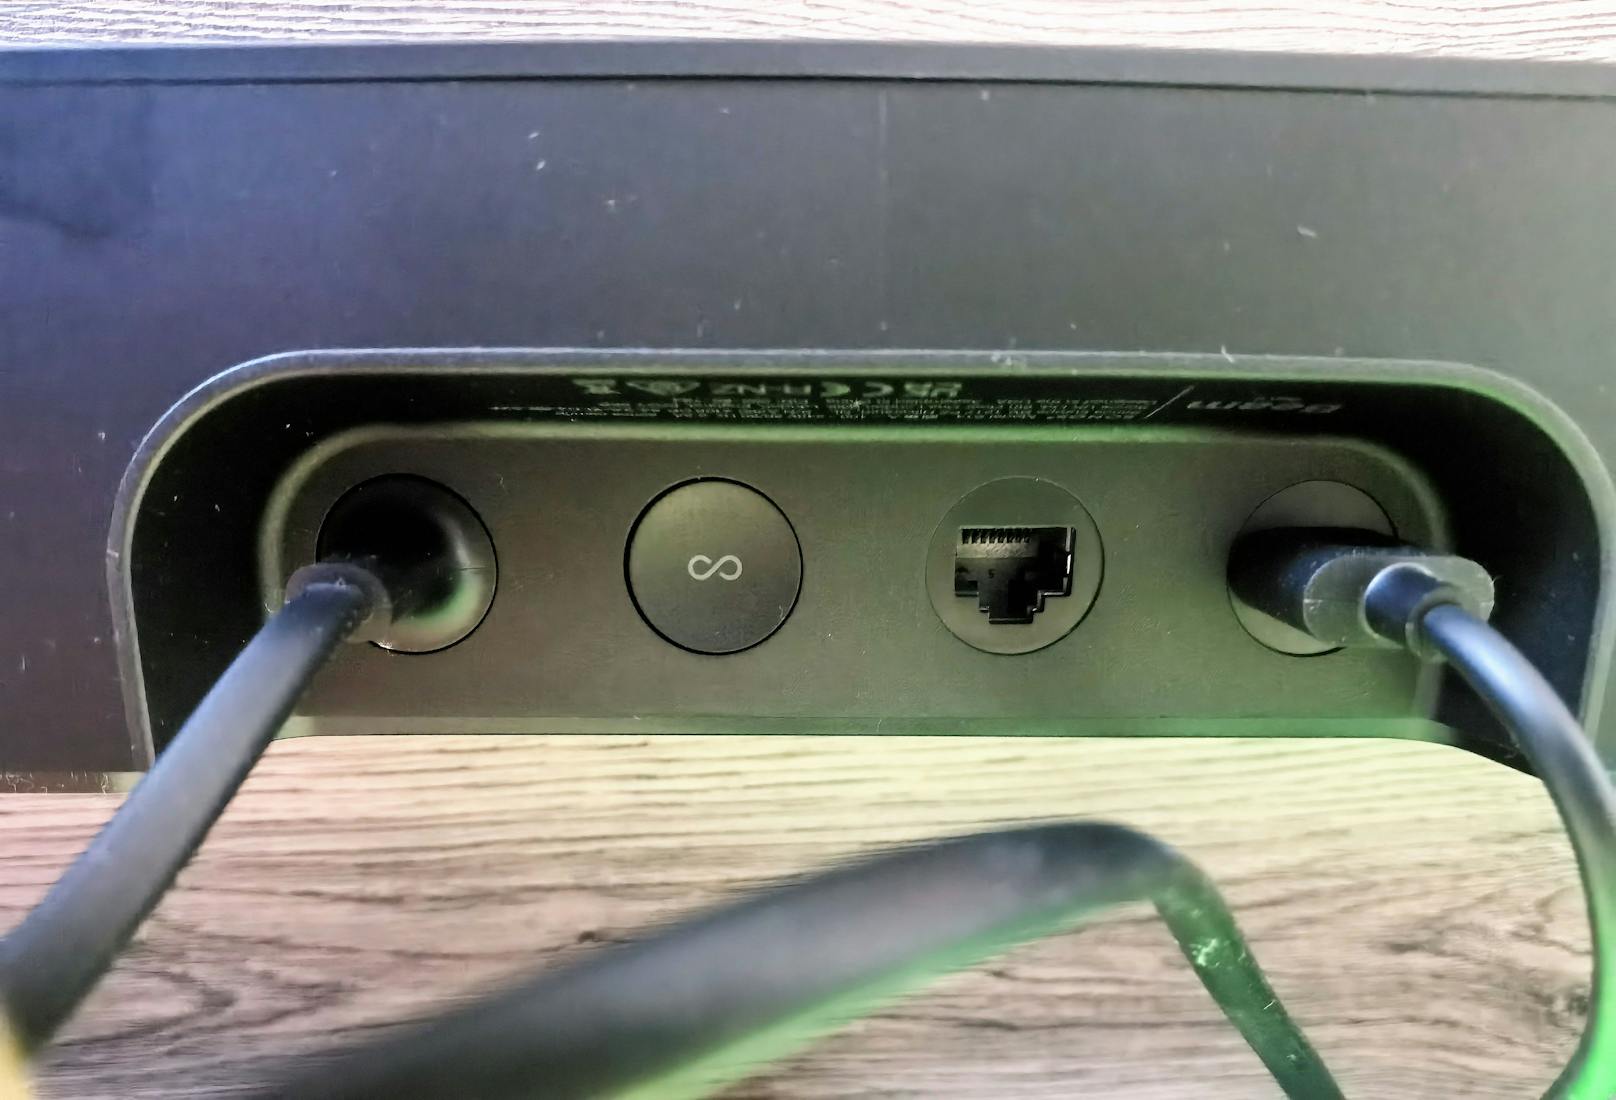 Auf der Rückseite wird das Gittermuster der Beam durch die Anschlüsse unterbrochen. Wieder geht es mit Strom- und HDMI-eARC-Anschluss minimalistisch zu, mehr braucht man im Betrieb aber auch nicht.